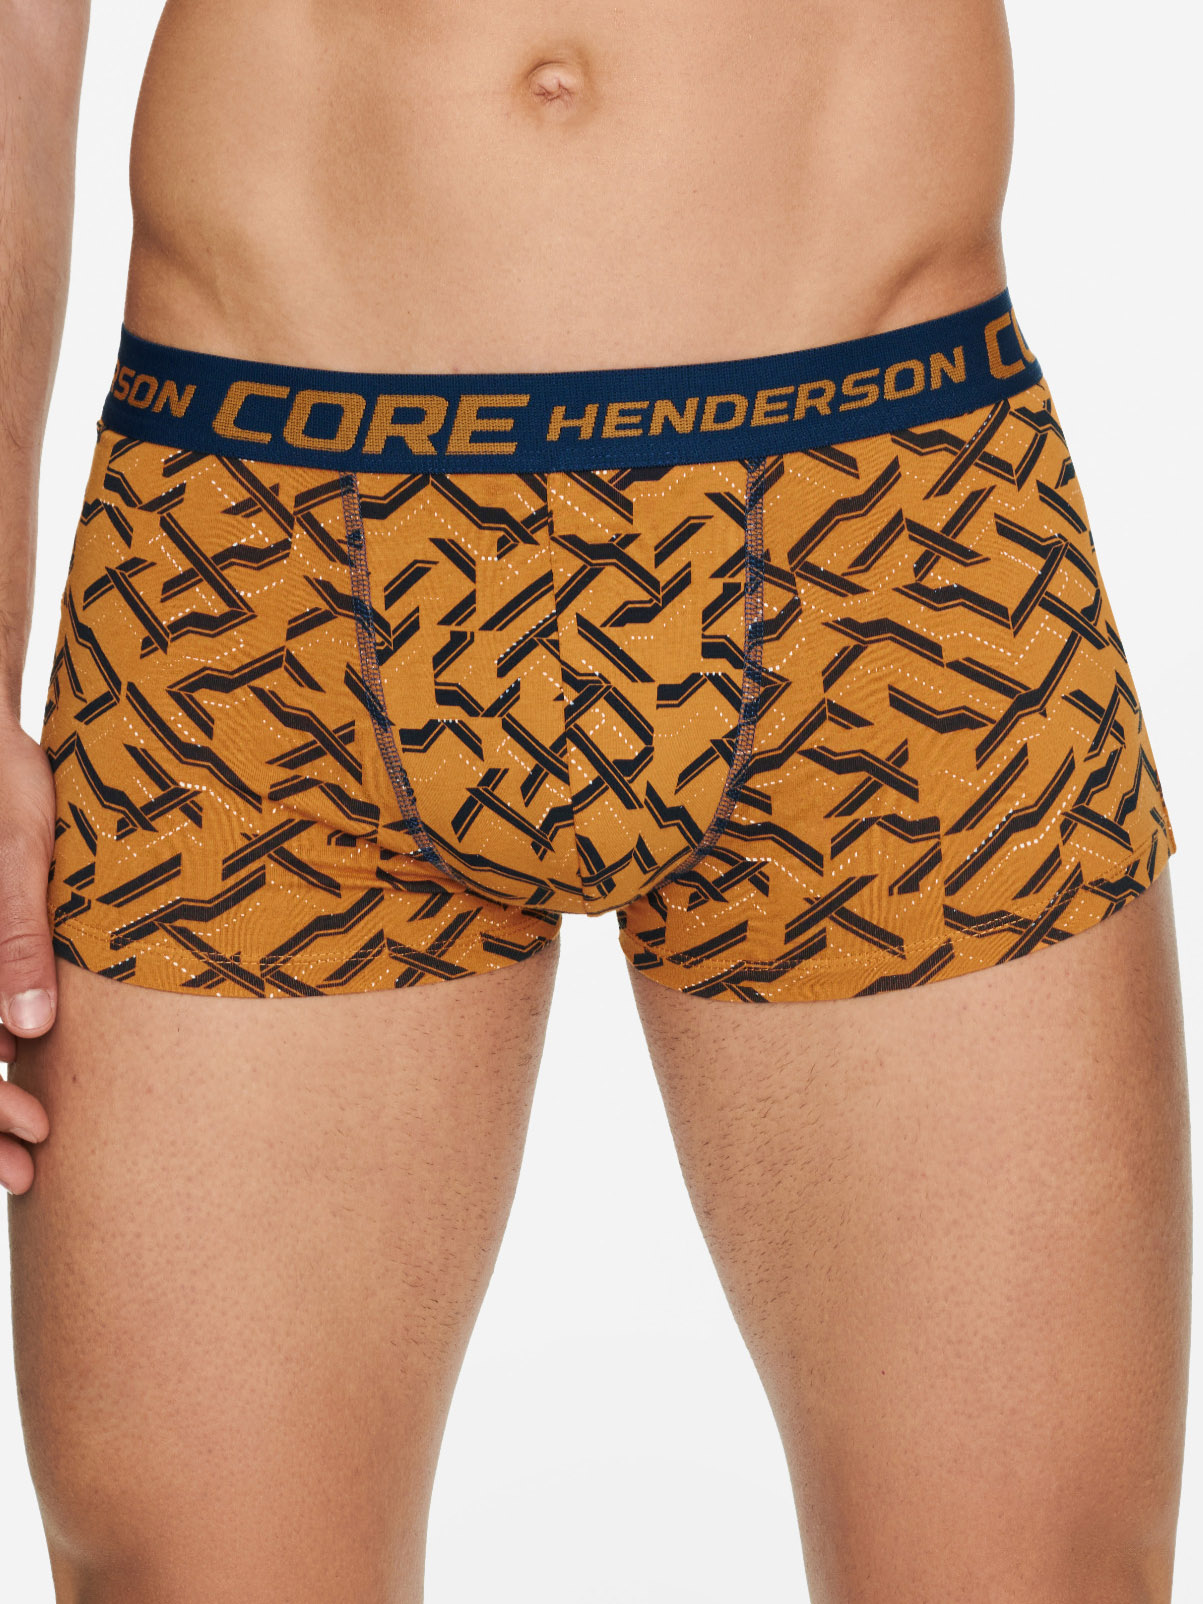 Set of men's cotton short boxer shorts (2 pcs. in different colors) Henderson Boot 2PAK 40062